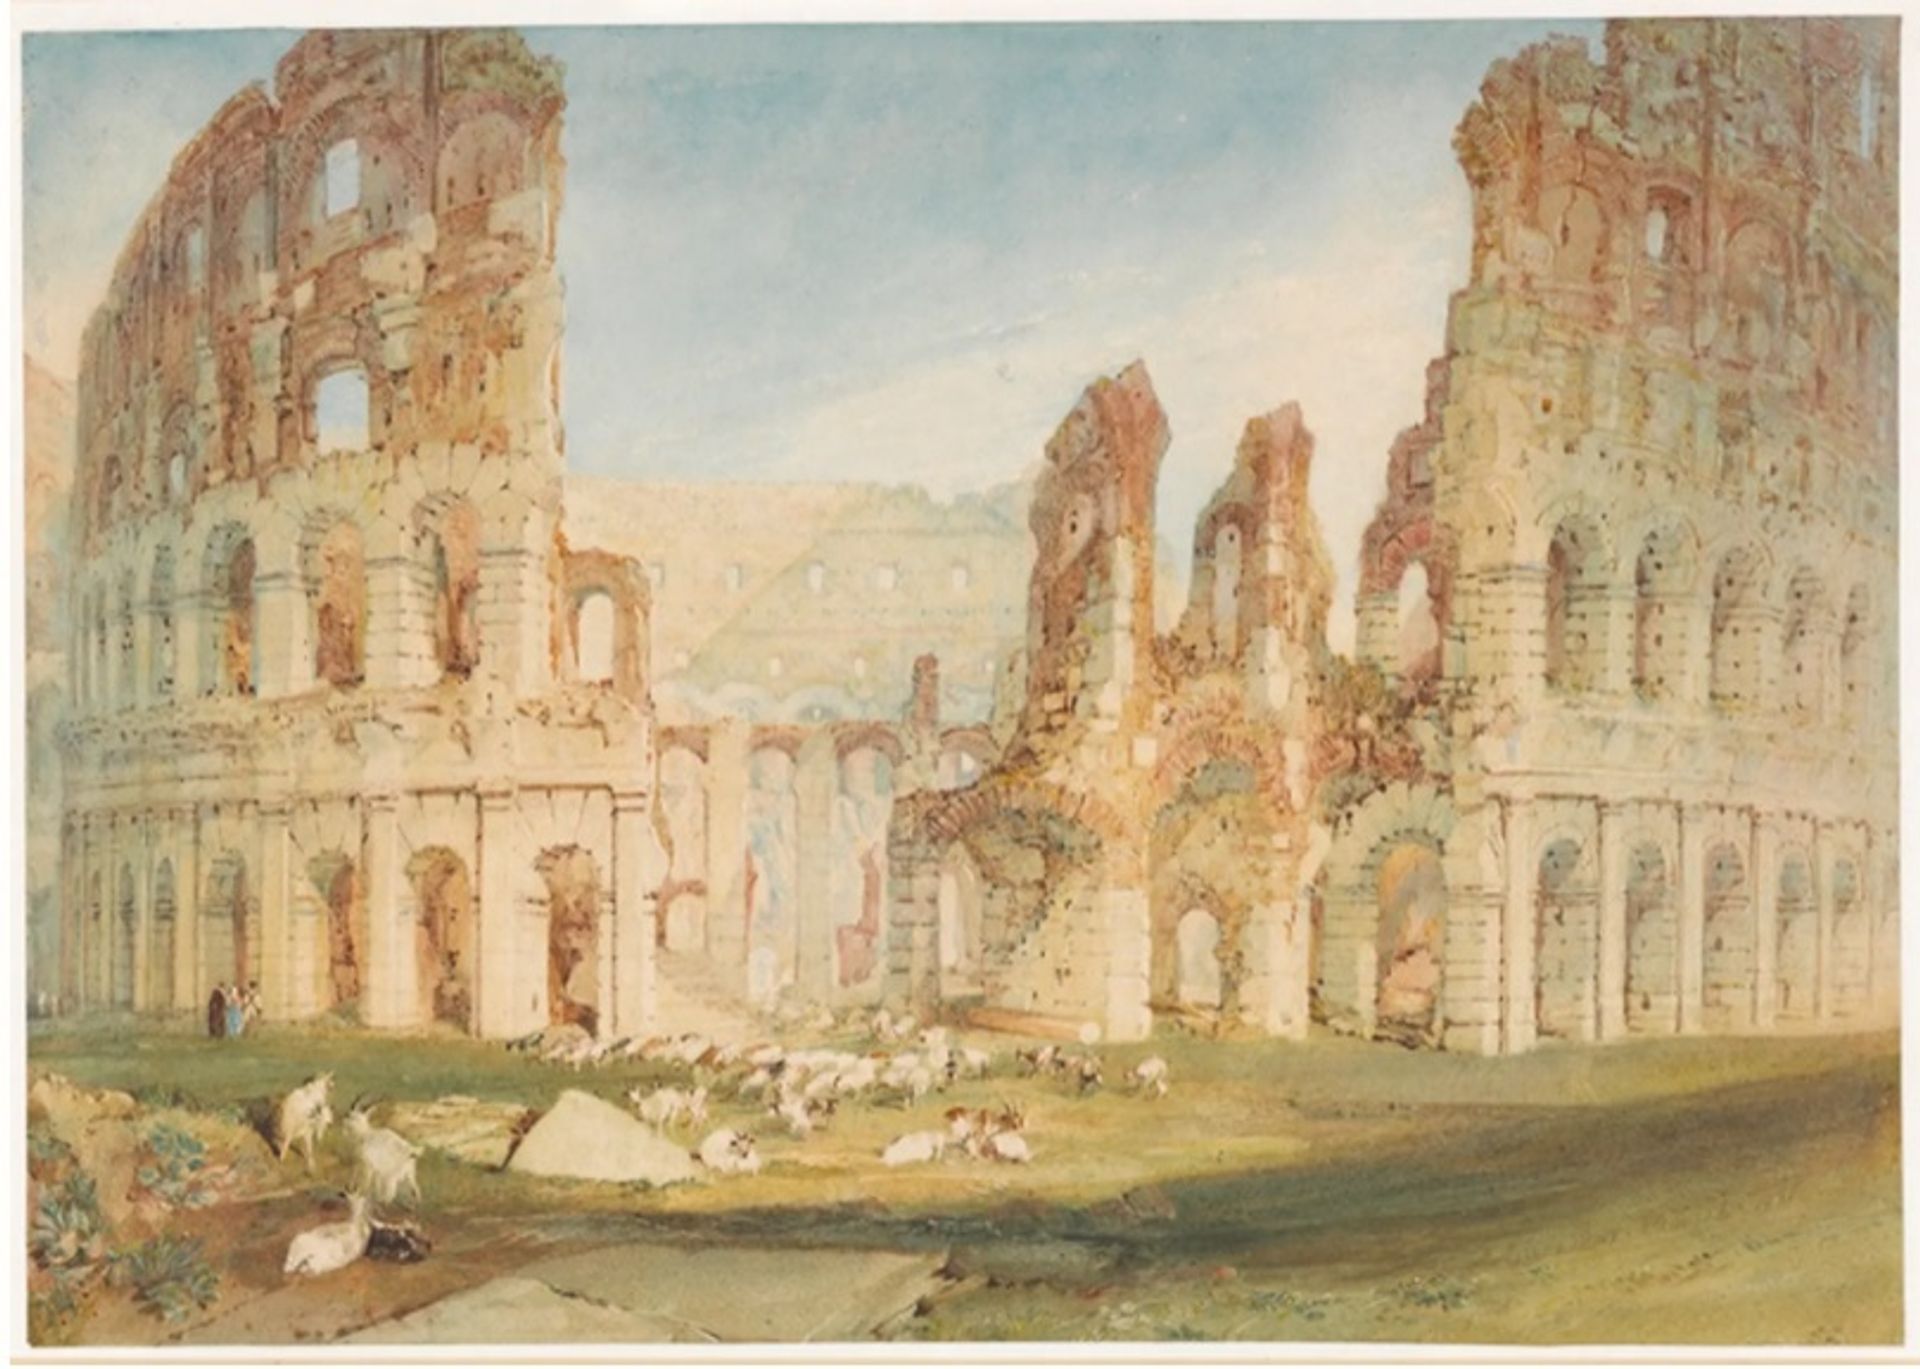 גרסאות דיגיטליות של יצירות מאת ג'וזף מלורד וויליאם טרנר, כמו Colosseum, Rome (1920), נמכרות כ-NFT על ידי המוזיאון הבריטי

© 2022, הנאמנים של המוזיאון הבריטי